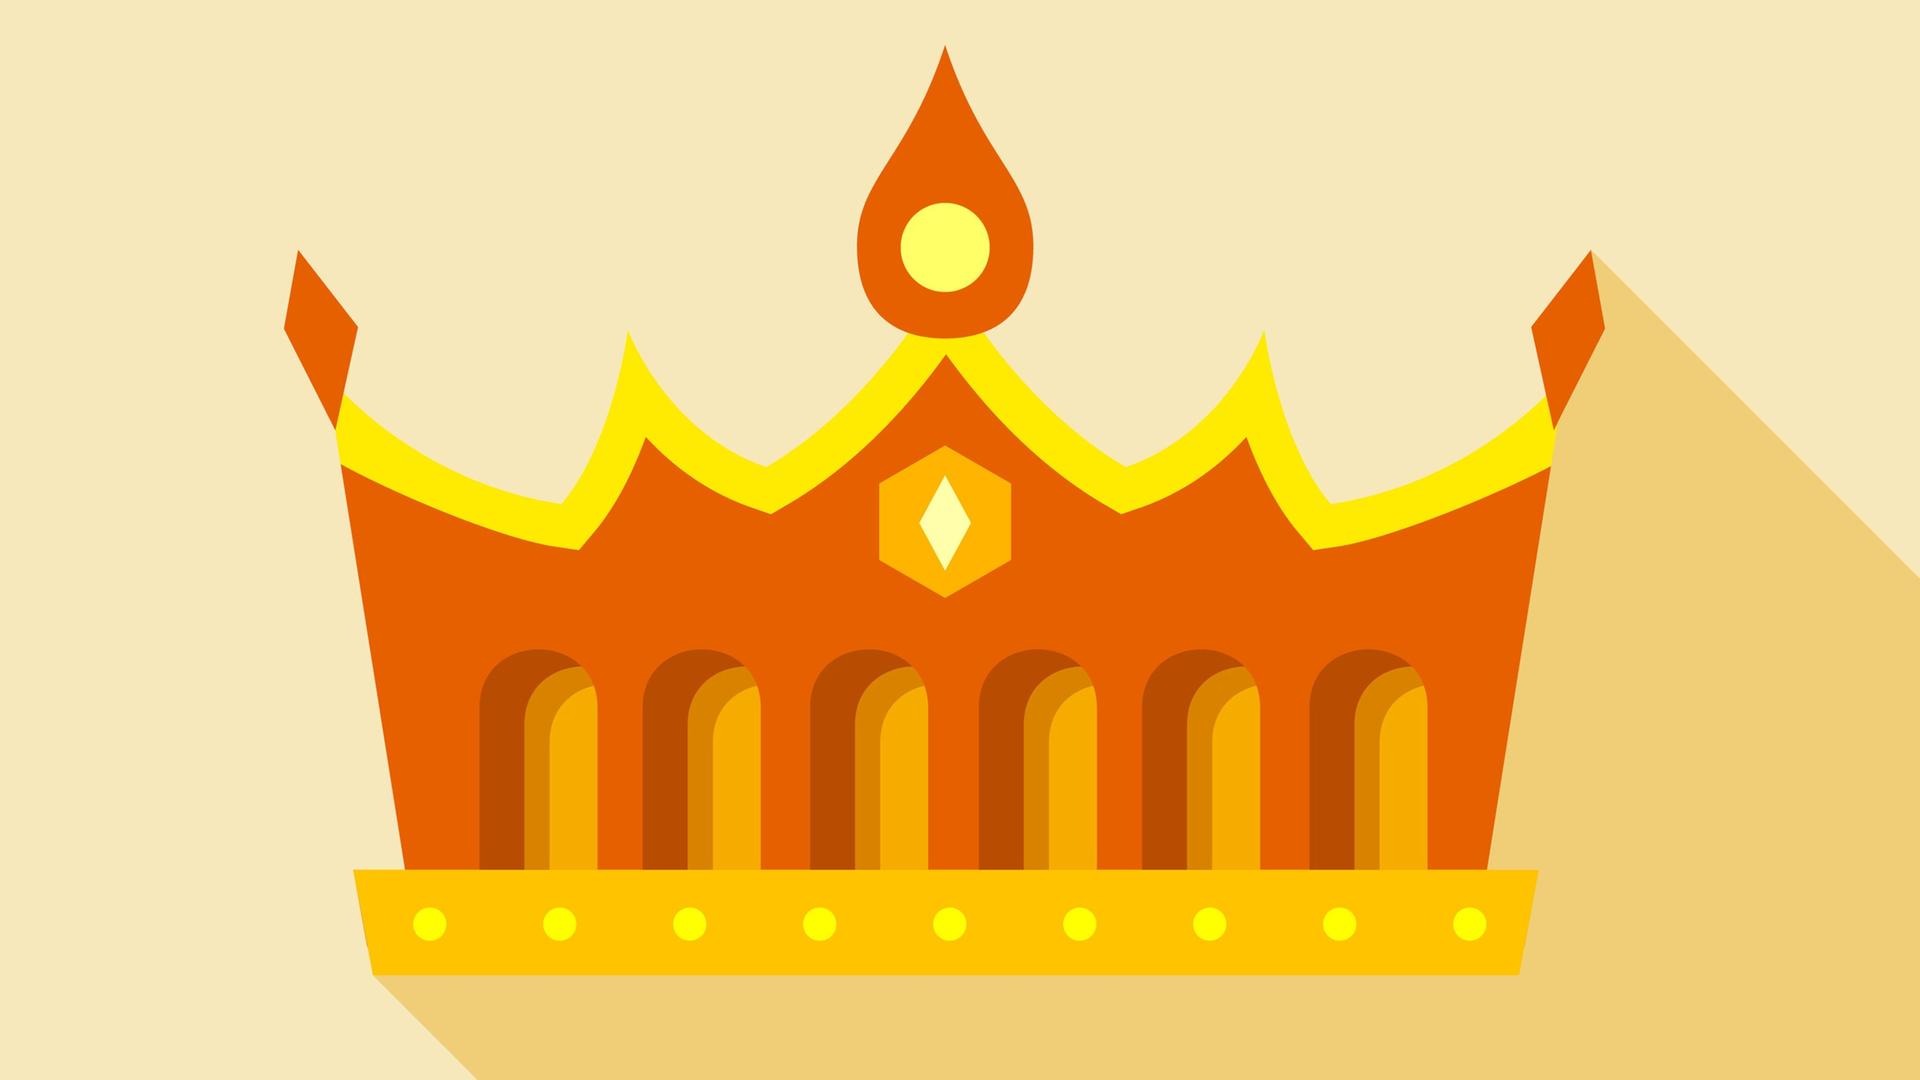 Eine goldene Krone